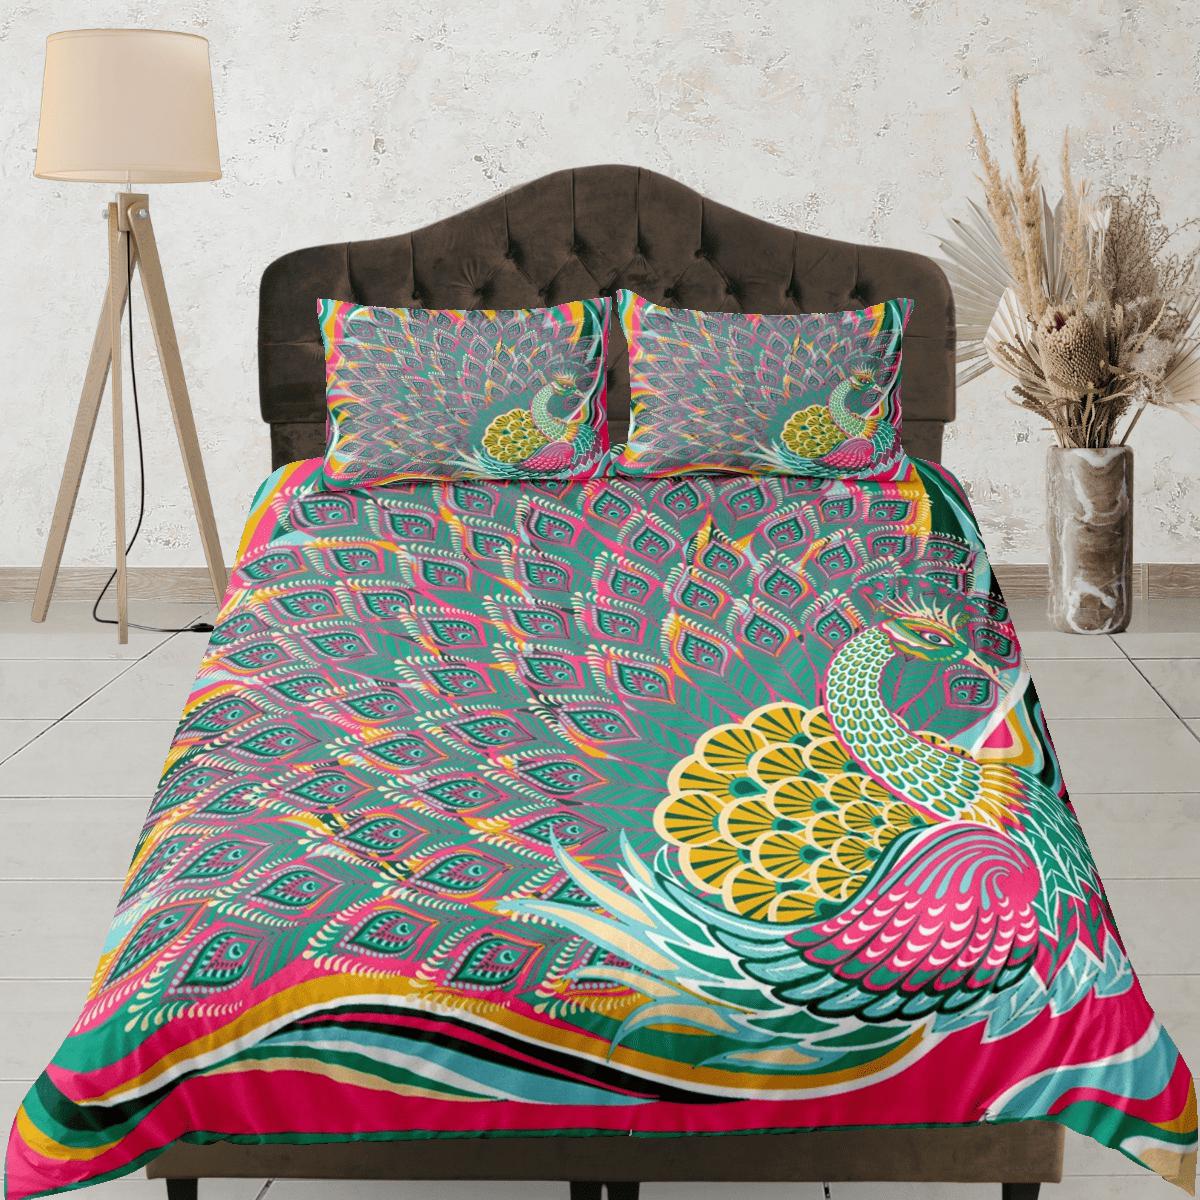 daintyduvet Colorful peacock decor aesthetic bedding set full, luxury duvet cover queen, king, boho duvet, designer bedding, maximalist bedspread